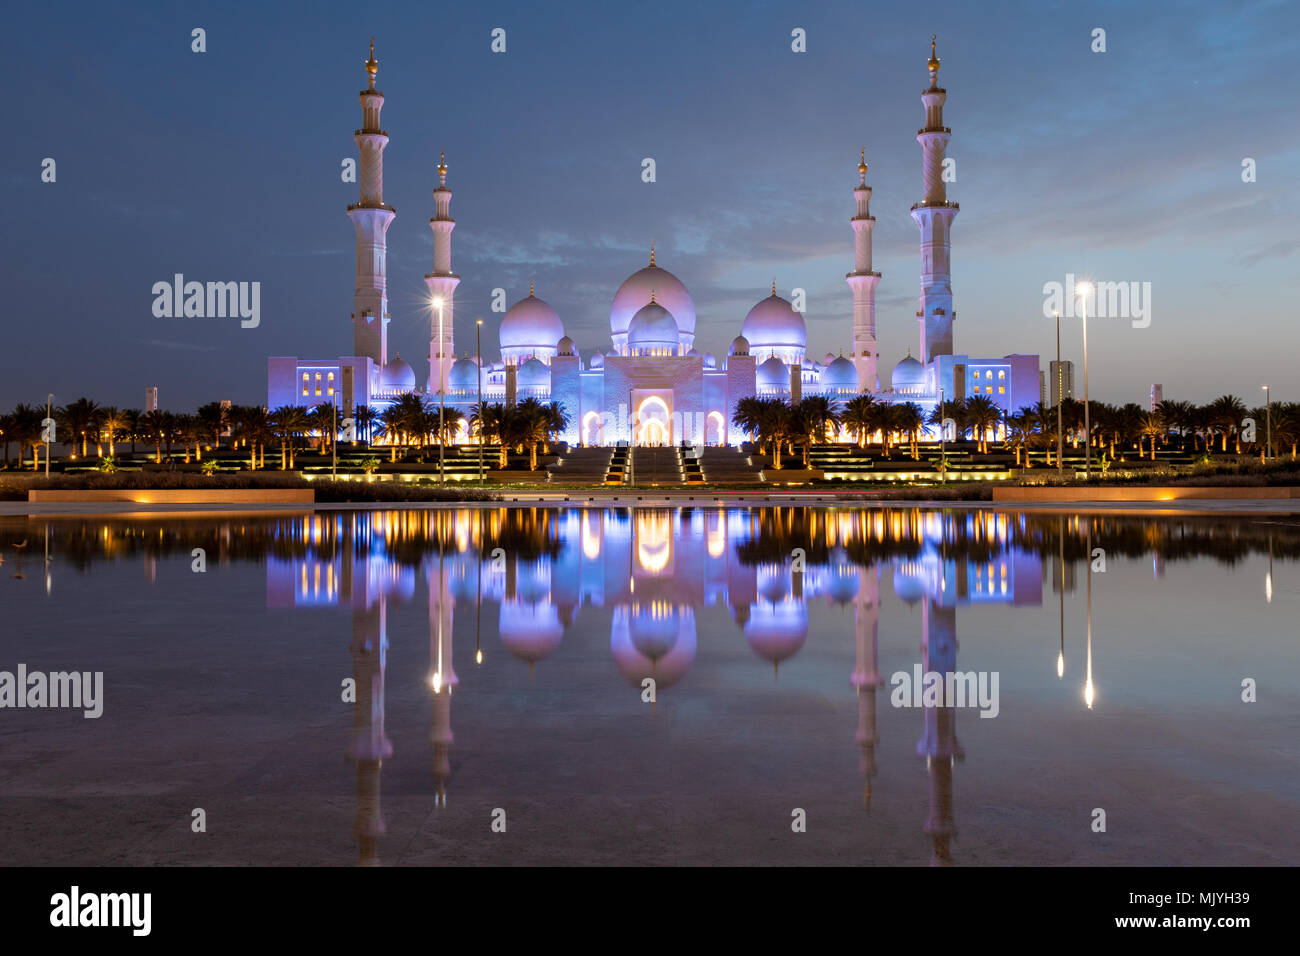 Sheikh Zayed Moschee in Abu Dhabi, Hauptstadt der Vereinigten Arabischen Emirate. Moschee ist von Italienischen weißem Marmor gebaut. Reflexion in See Stockfoto